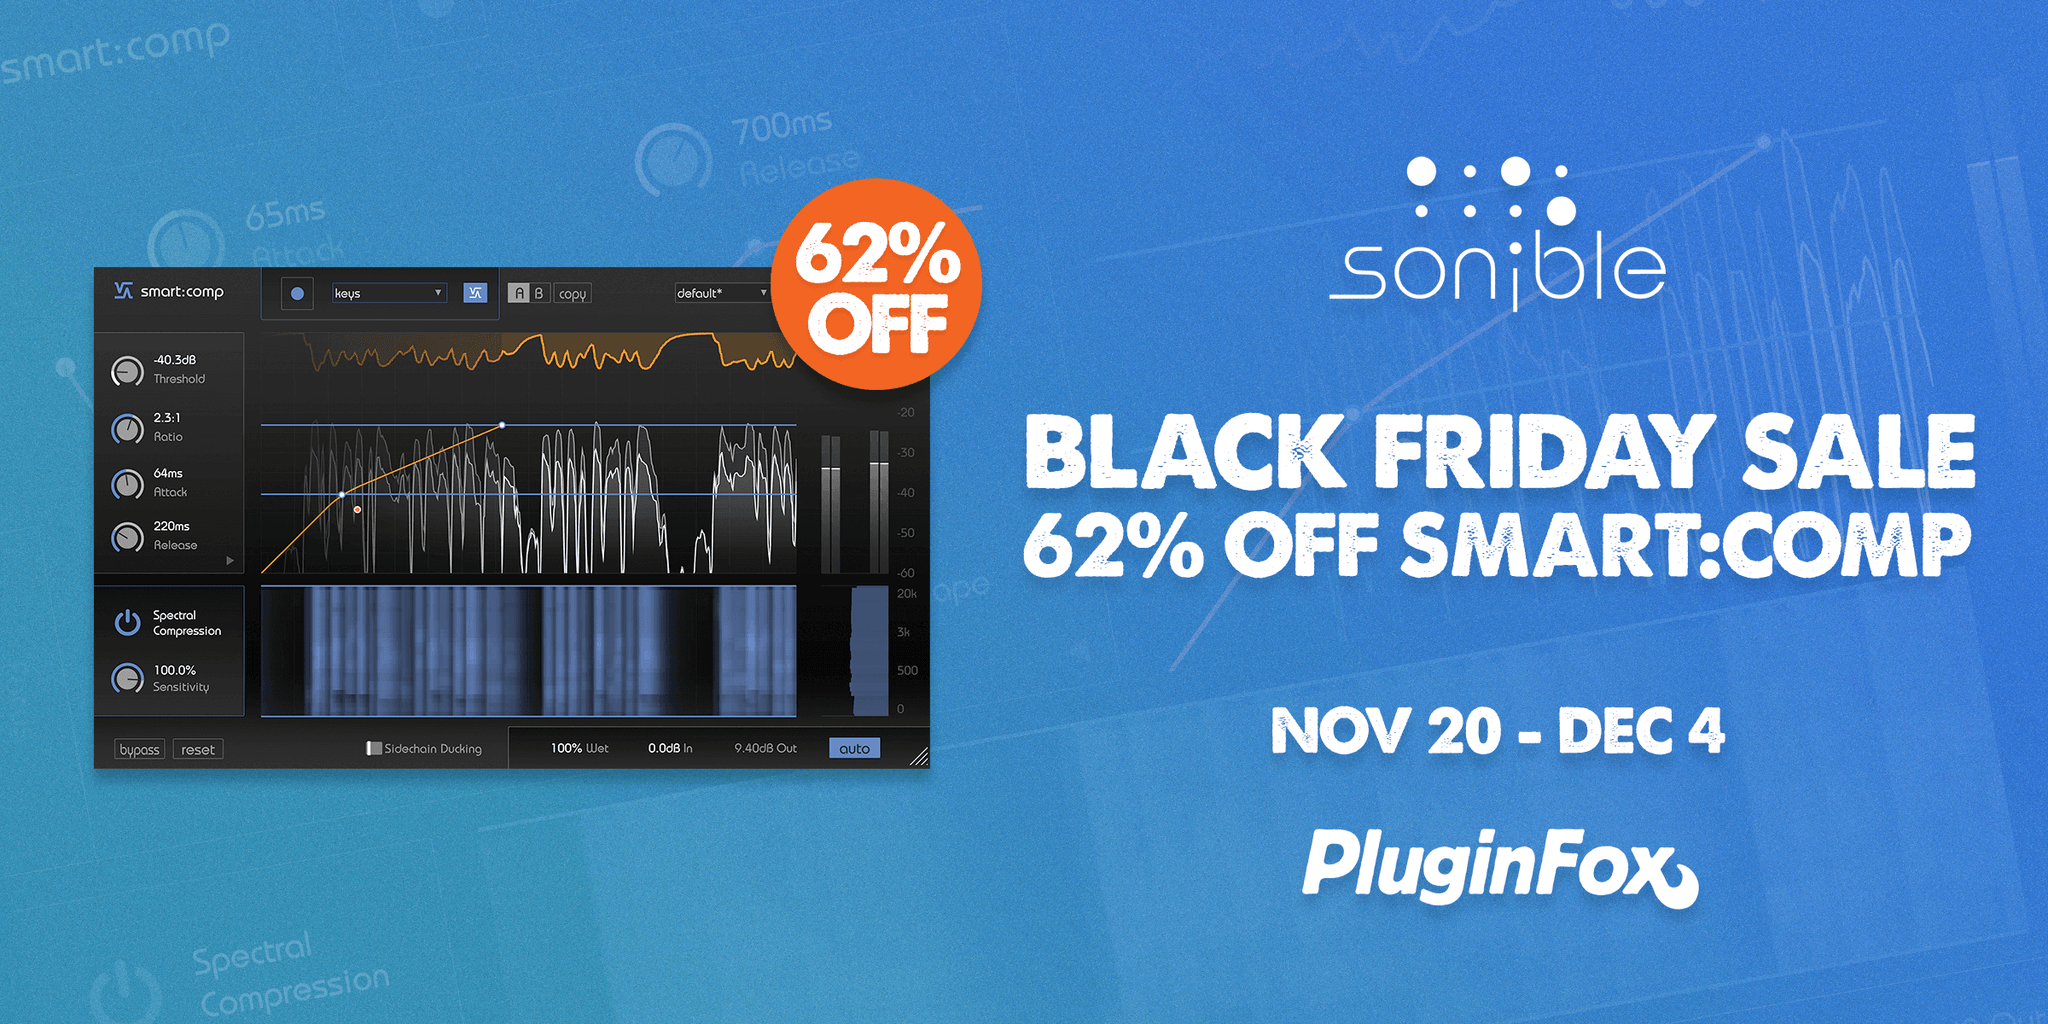 Sonible Black Friday Sale - Nov 20 - Dec 1